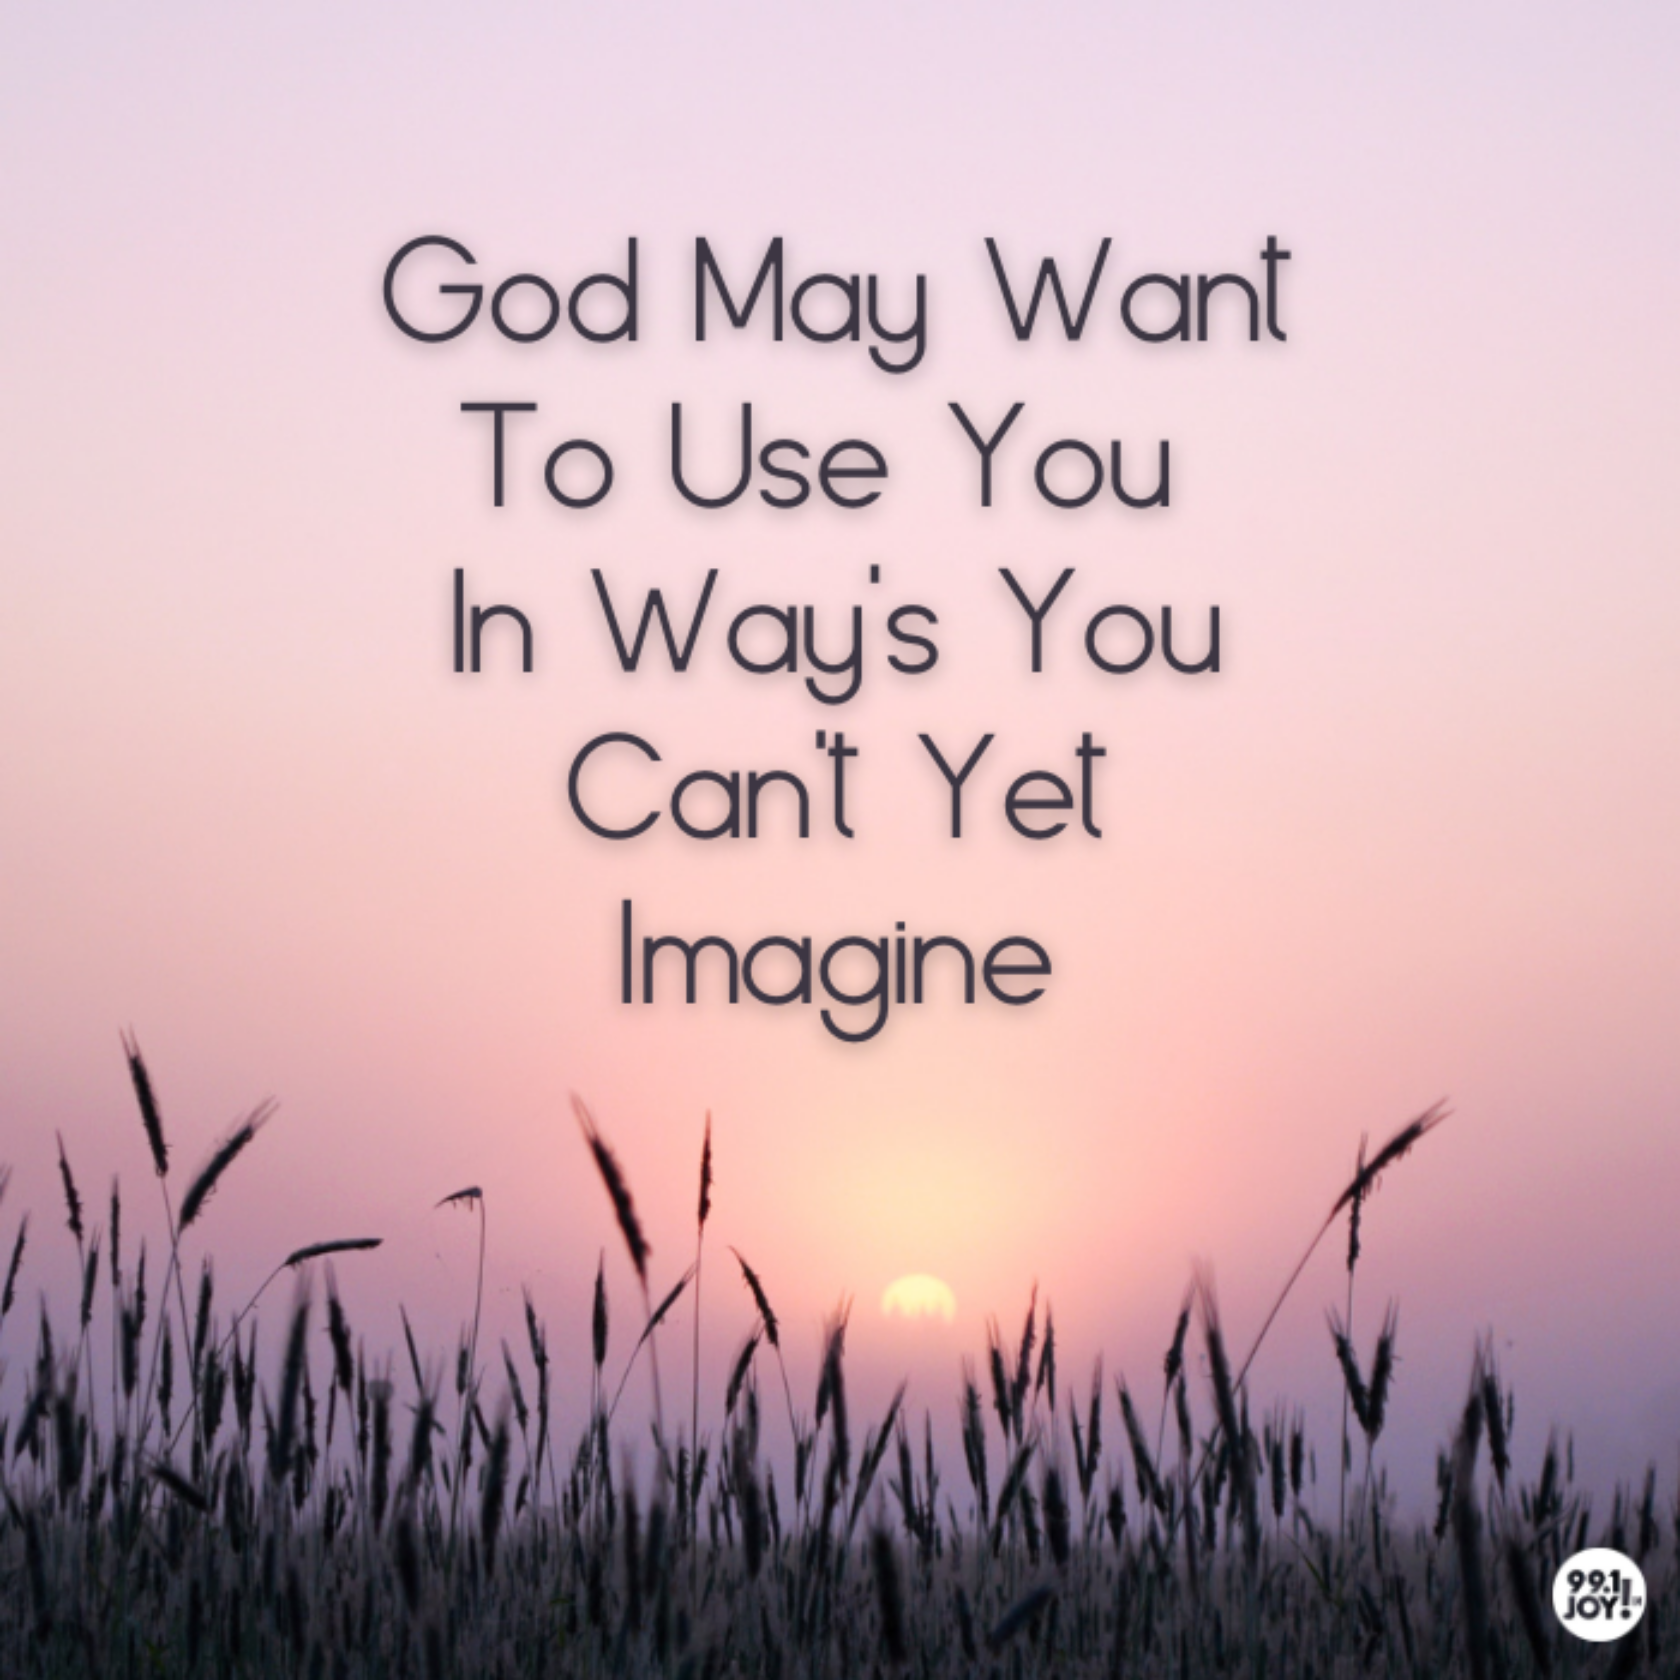 God May Want To Use You In Way’s You Can’t Yet Imagine